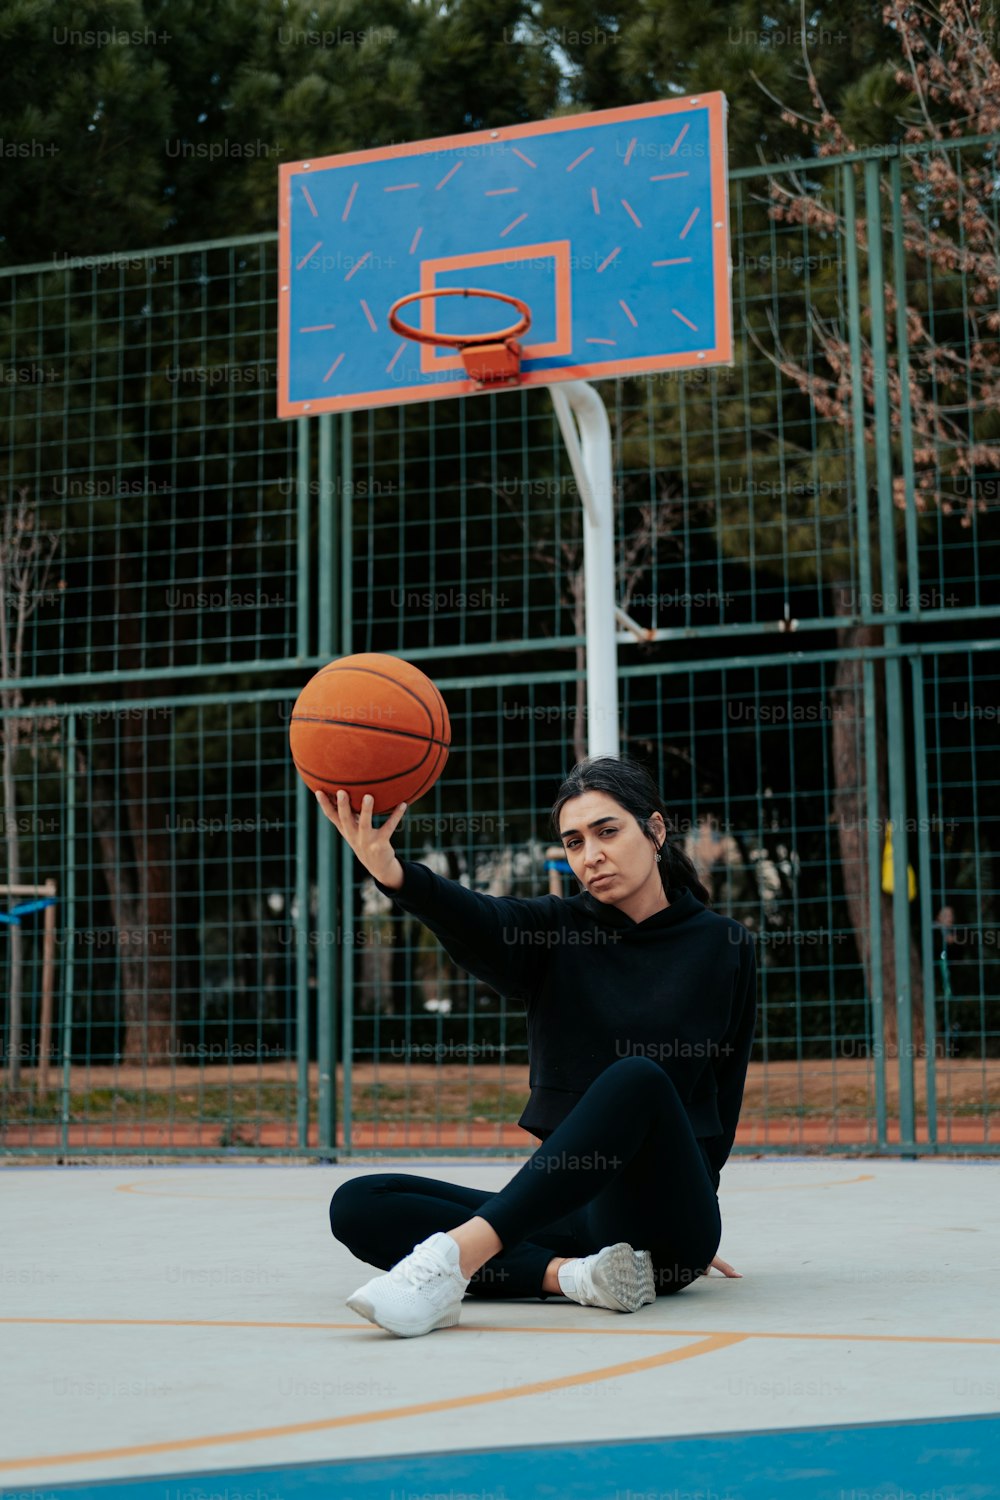 그녀의 손에 농구공을 들고 땅에 앉아 있는 여자